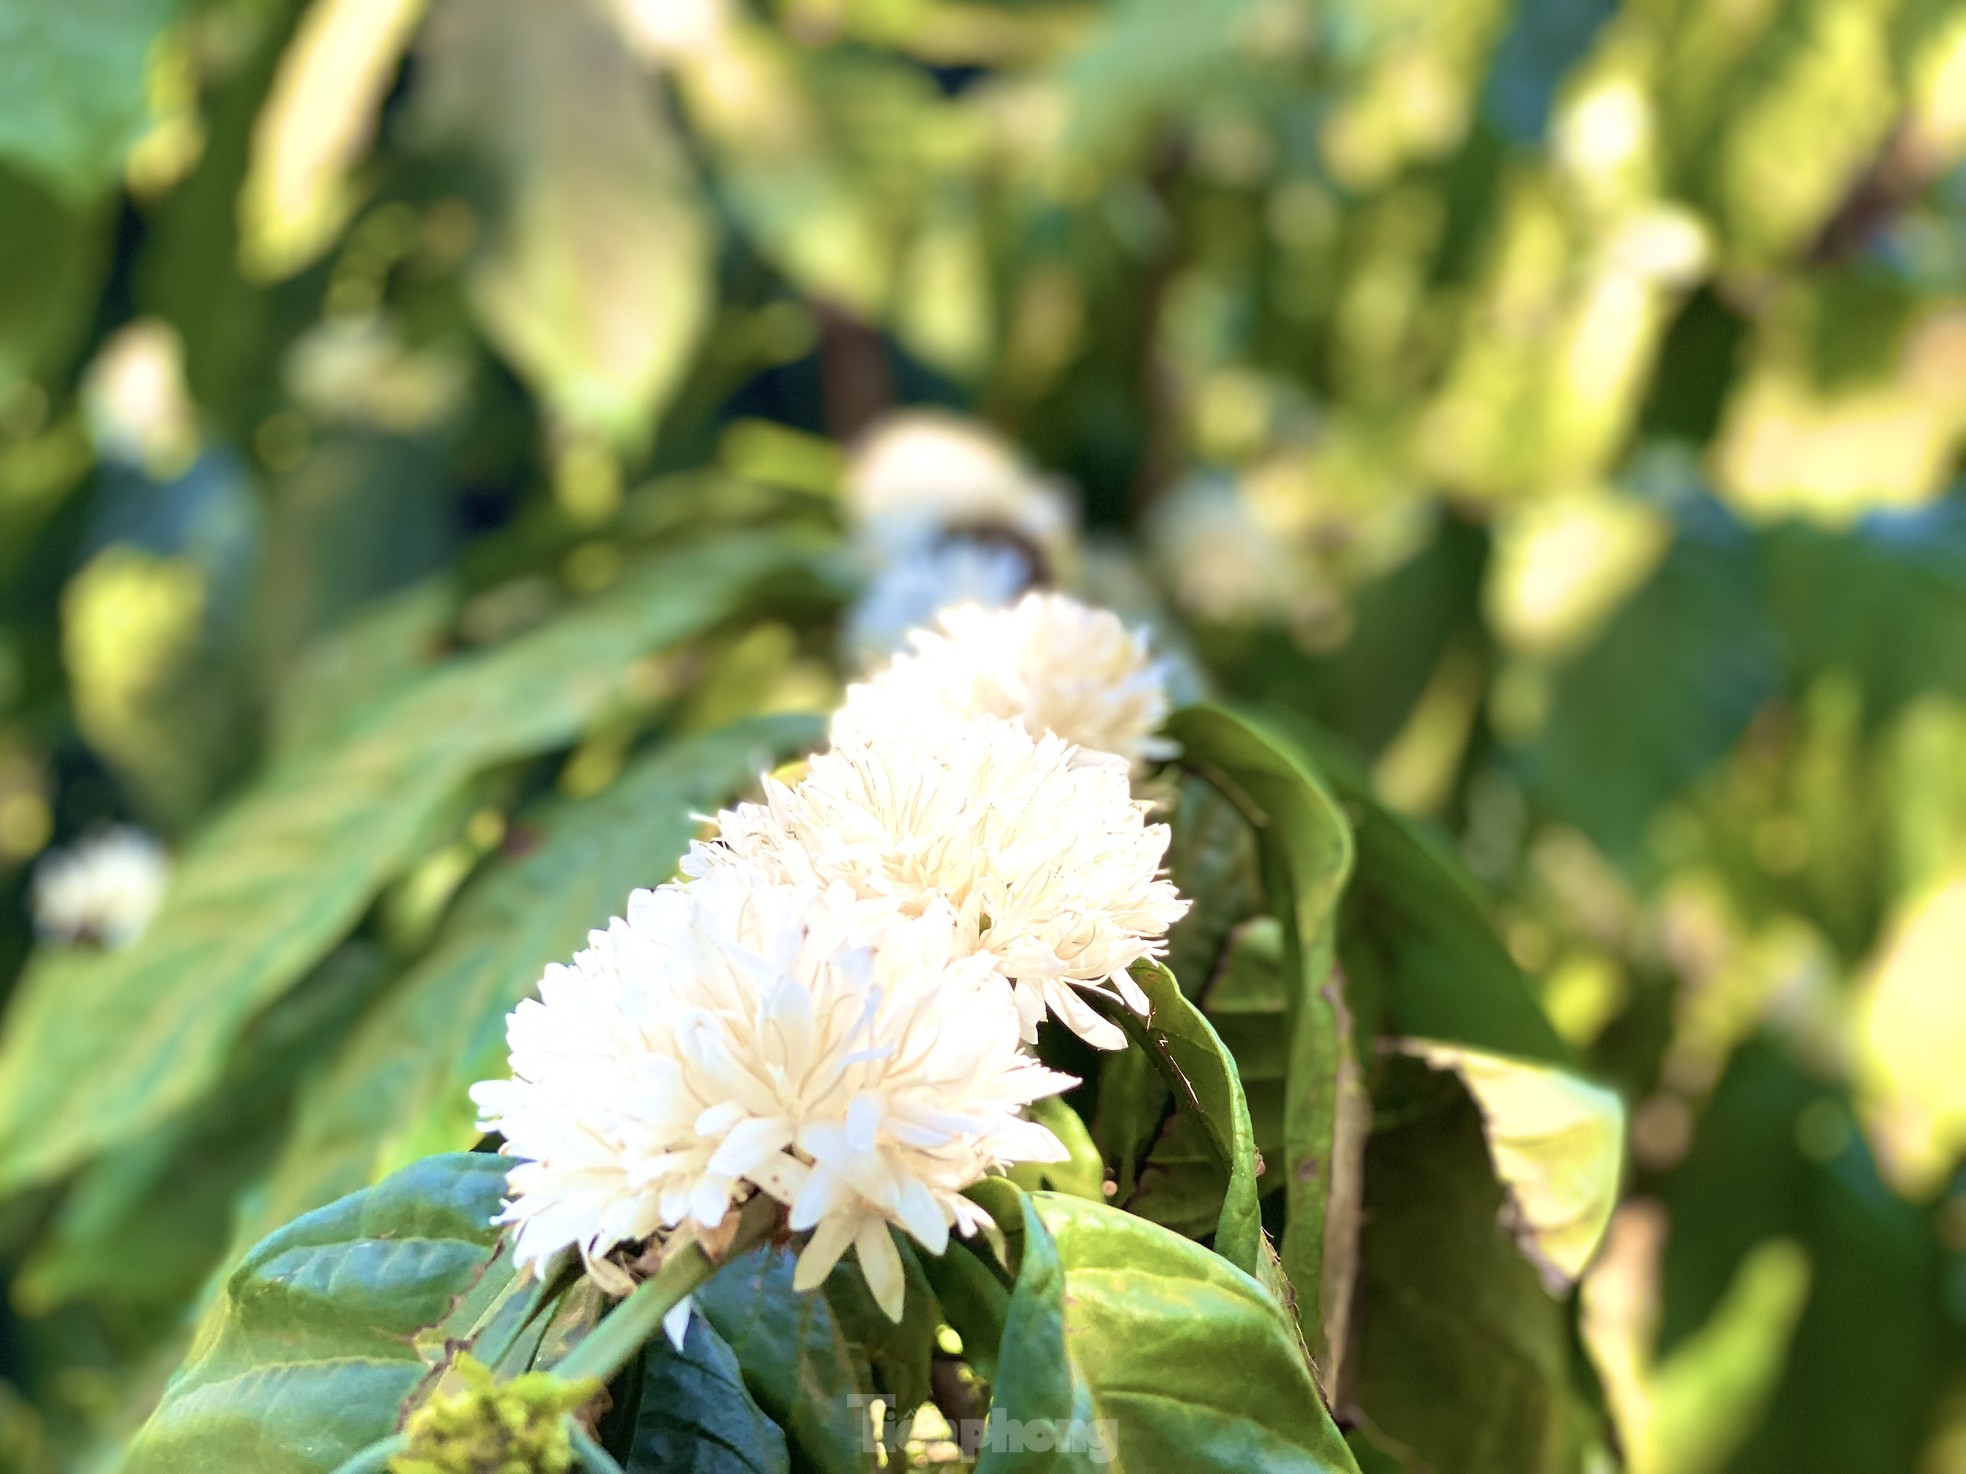 Mê mẩn mùa hoa cà phê nở trắng, tỏa hương ngọt ngào Tây Nguyên - Ảnh 2.